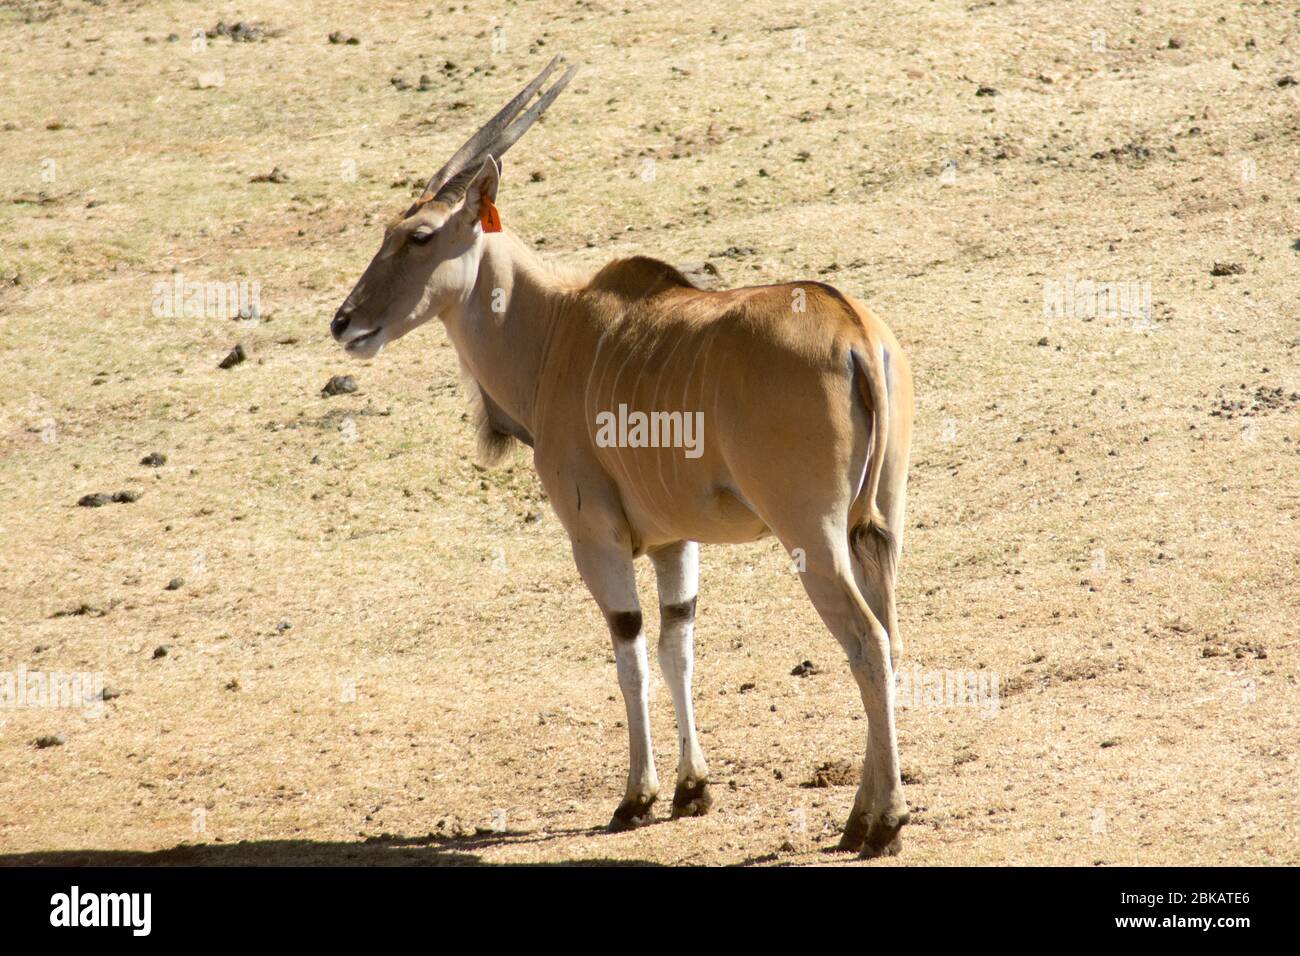 Eland commun sauvage (ou antilope) dans une réserve de gibier Banque D'Images